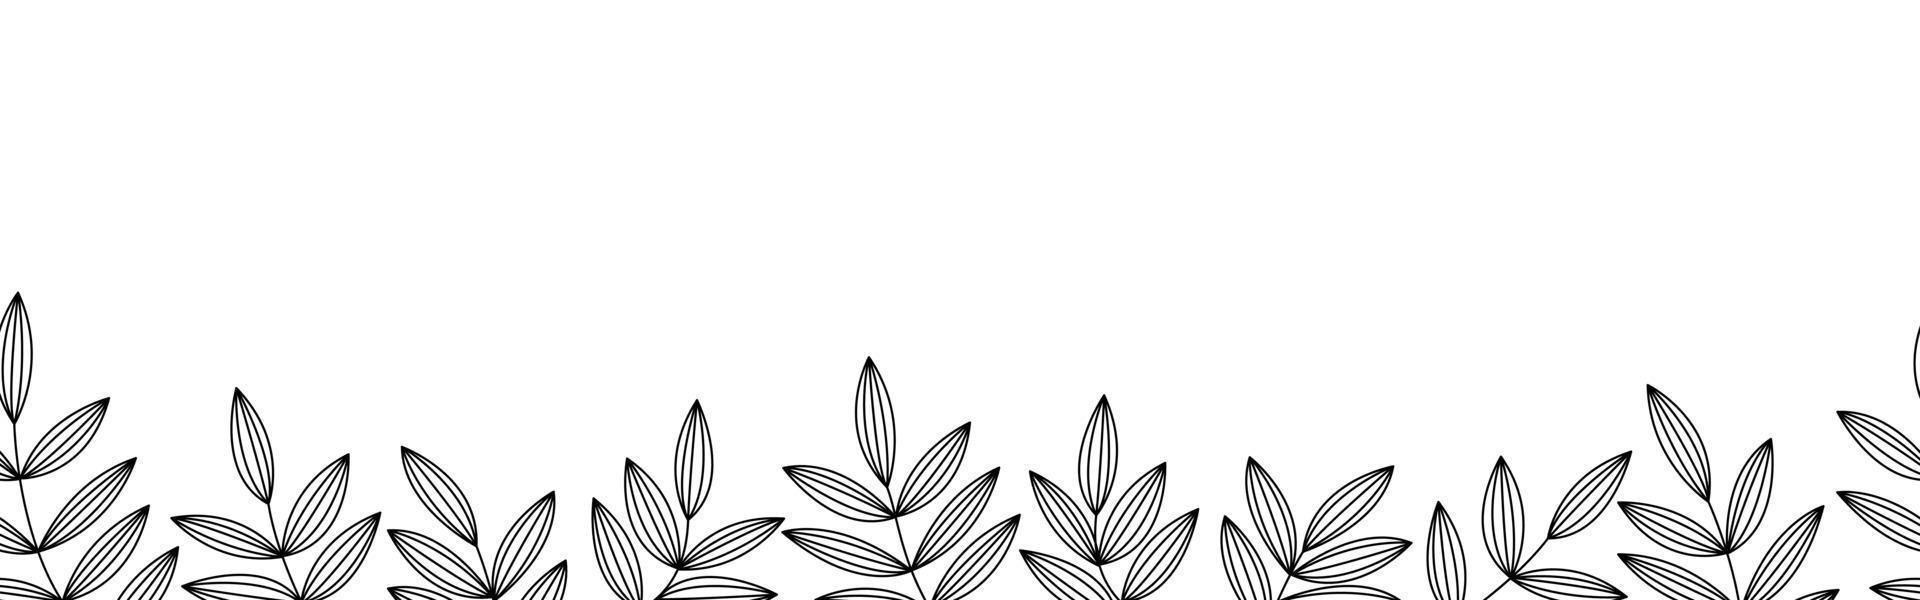 monokrom horisontell sömlös blom- och bladkant på en vit bakgrund. abstrakt lämna bakgrundsmönster. botanisk texturdesign för tryck, väggkonst och tapeter. vektor illustration